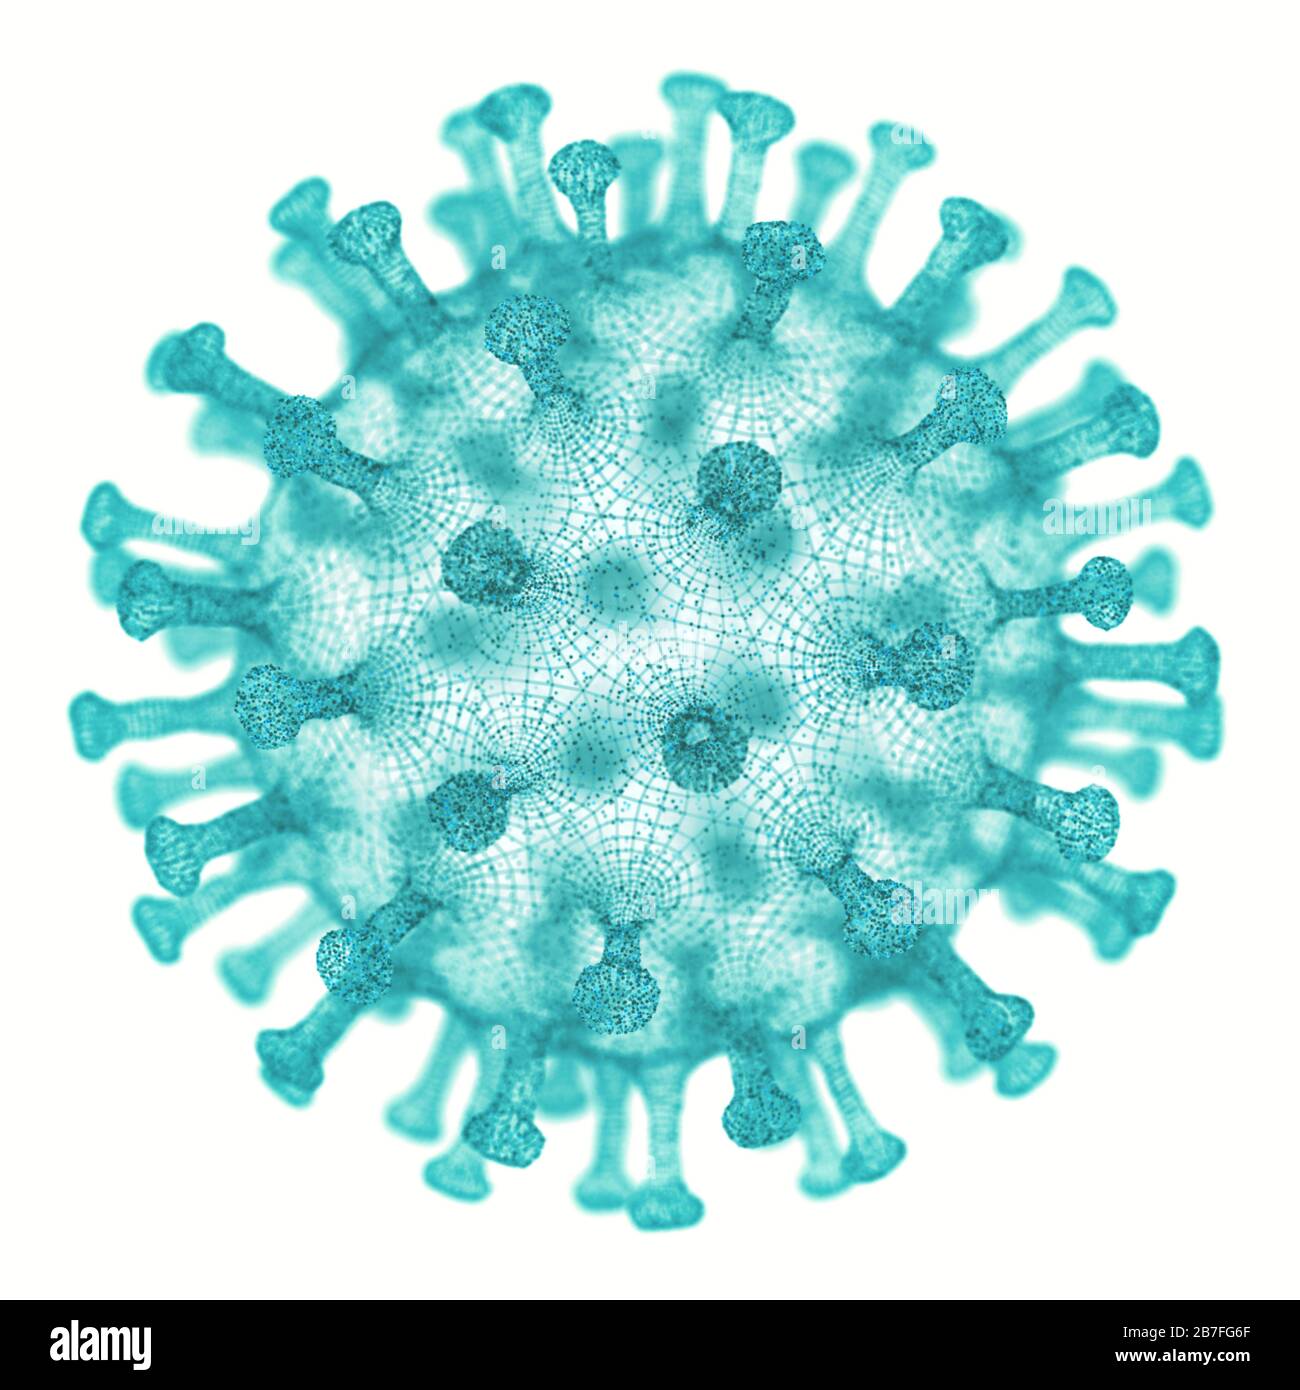 Virus illustratif conceptuel. Image d'un virus, d'un pathogène sous forme de virus générique. Illustration tridimensionnelle. Banque D'Images